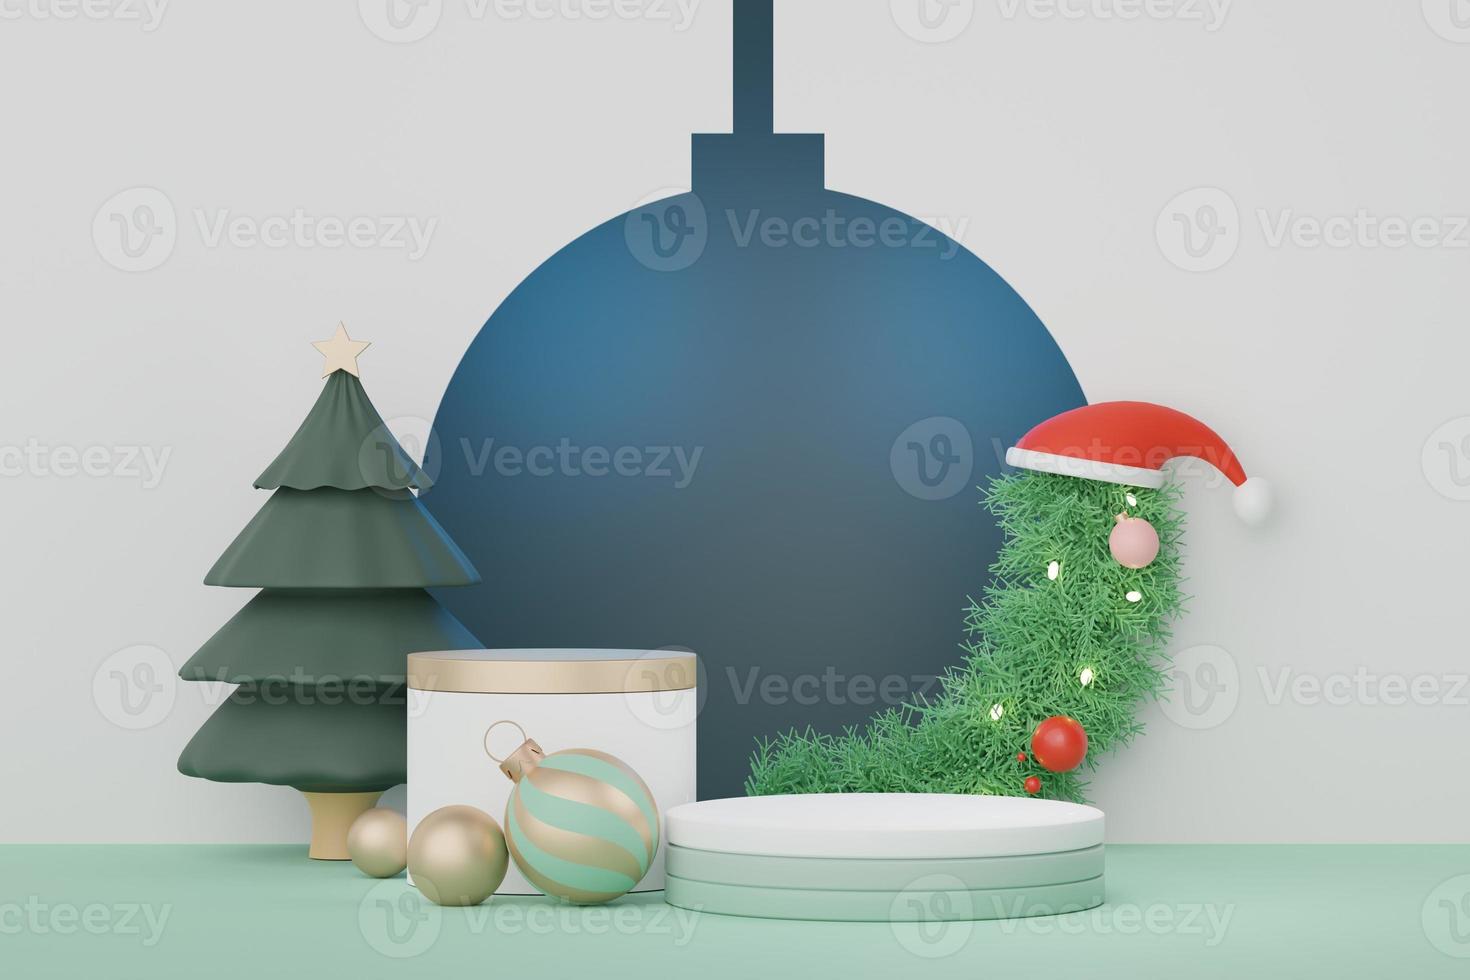 Podio de visualización 3d para presentación de productos y cosméticos con concepto de feliz navidad y feliz año nuevo. geométrico moderno. plataforma para maquetas y mostrar la marca. diseño minimalista y limpio. foto